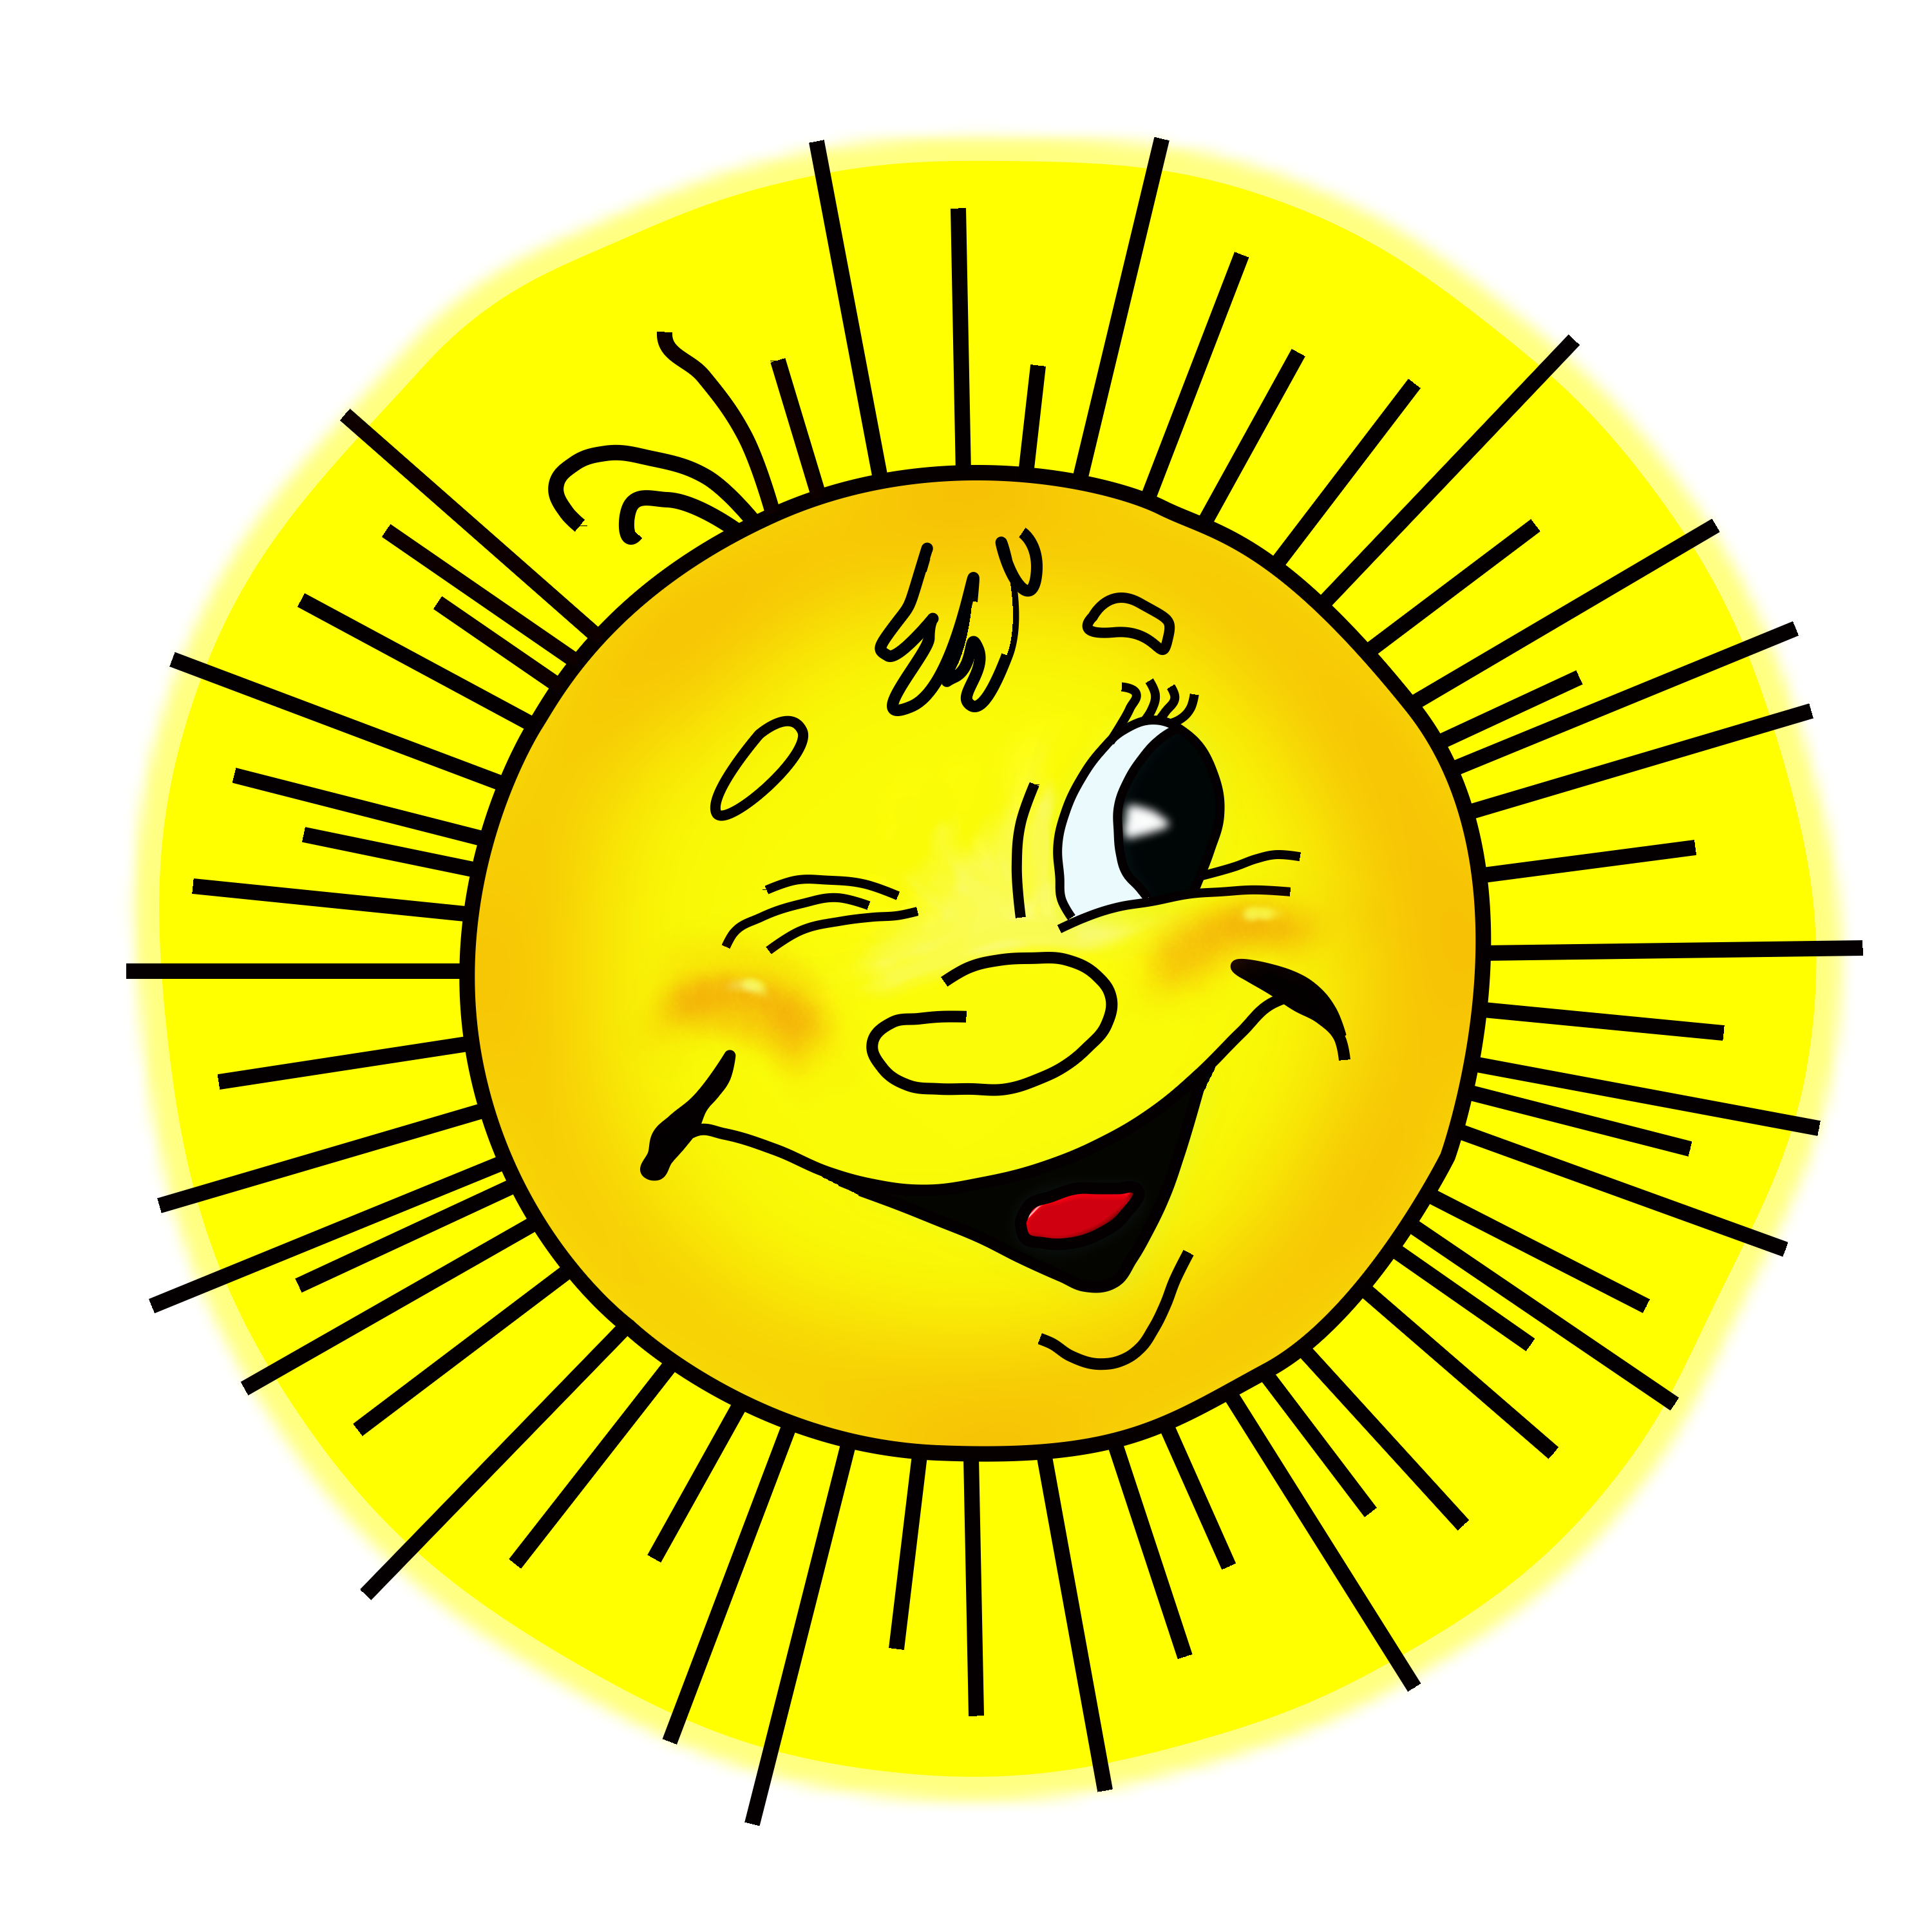 Имя шепнешь и солнце улыбнется. Солнышко улыбается. Веселое солнышко. Солнышко рисунок. Солнышко картинка для детей.